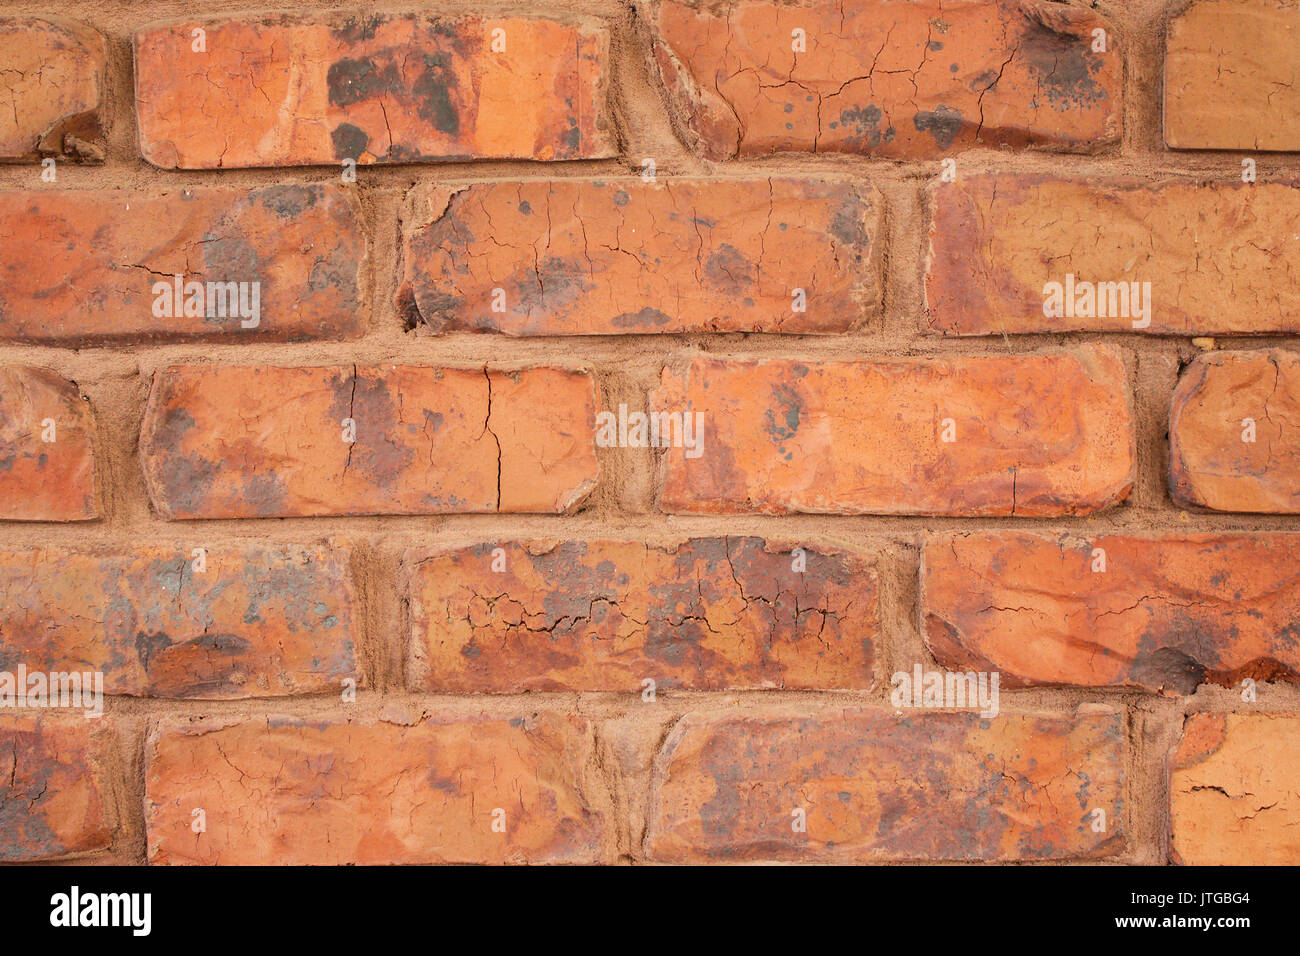 Eine Nahaufnahme von unregelmäßig geformten roten Ziegeln geschichteten in einer horizontalen Muster mit orange braun Mörtel zu binden verwendet, eine Mauer zu errichten. Stockfoto